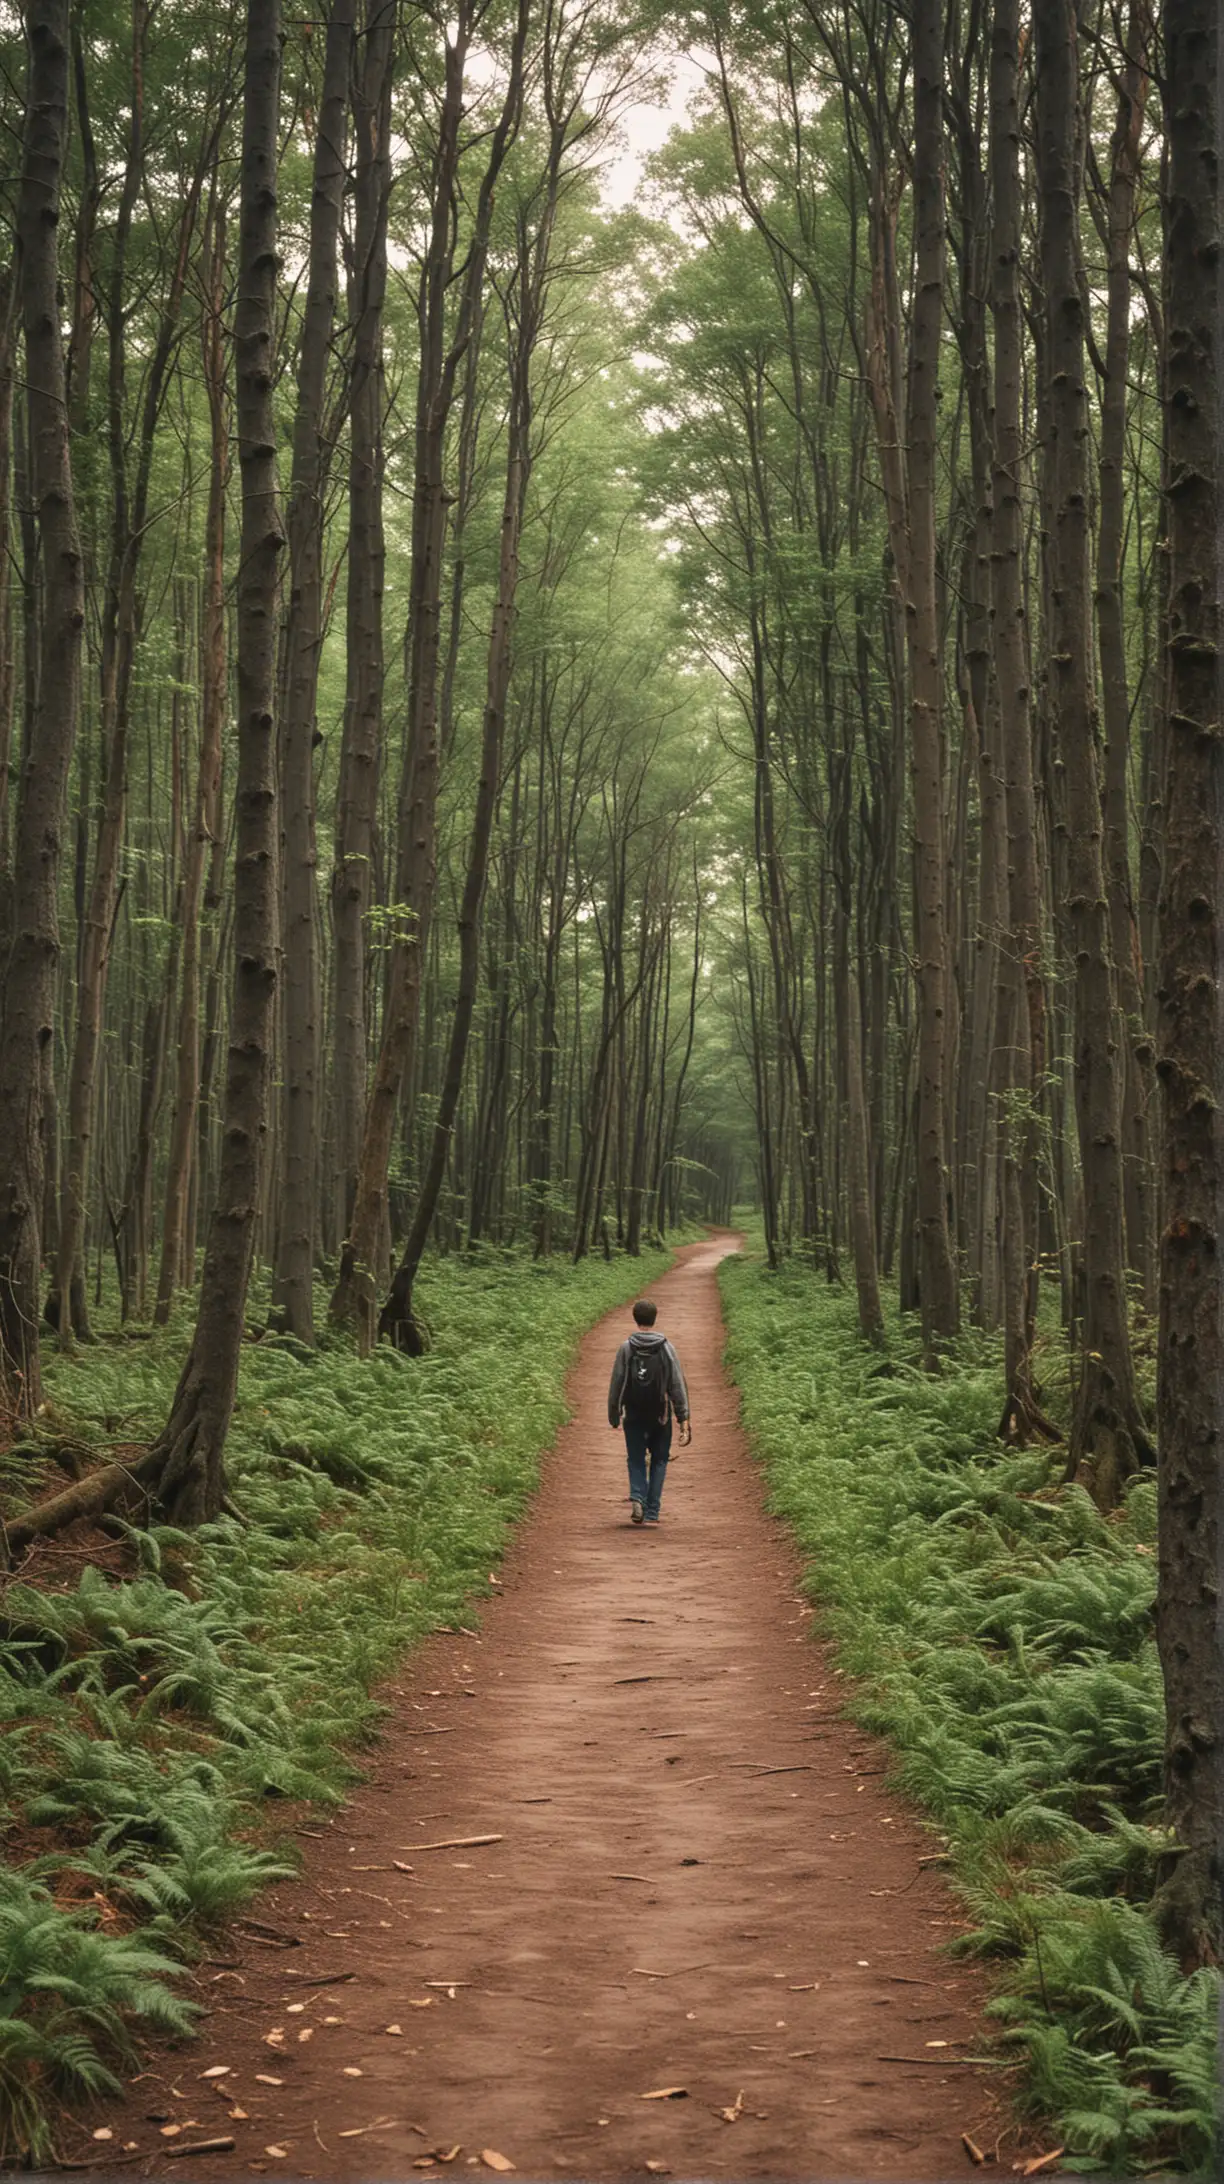 Юноша отправился в путь и вскоре столкнулся с выбором: короткий путь через лес или долгий путь по дороге.